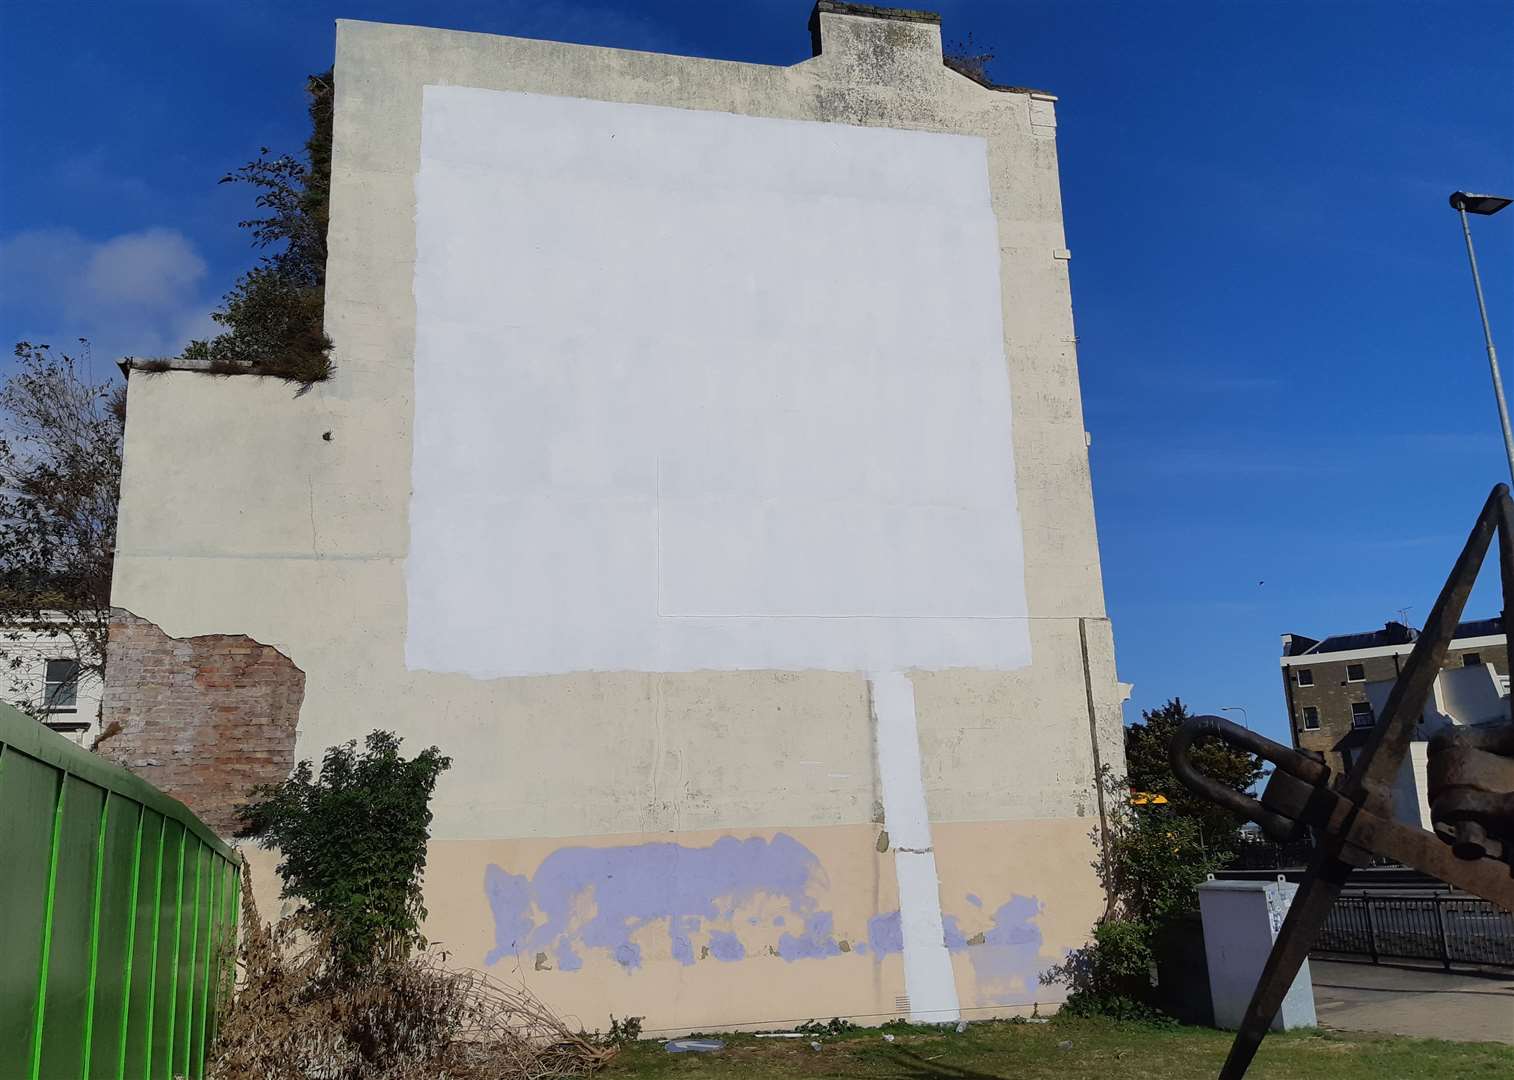 The Banksy mural has gone